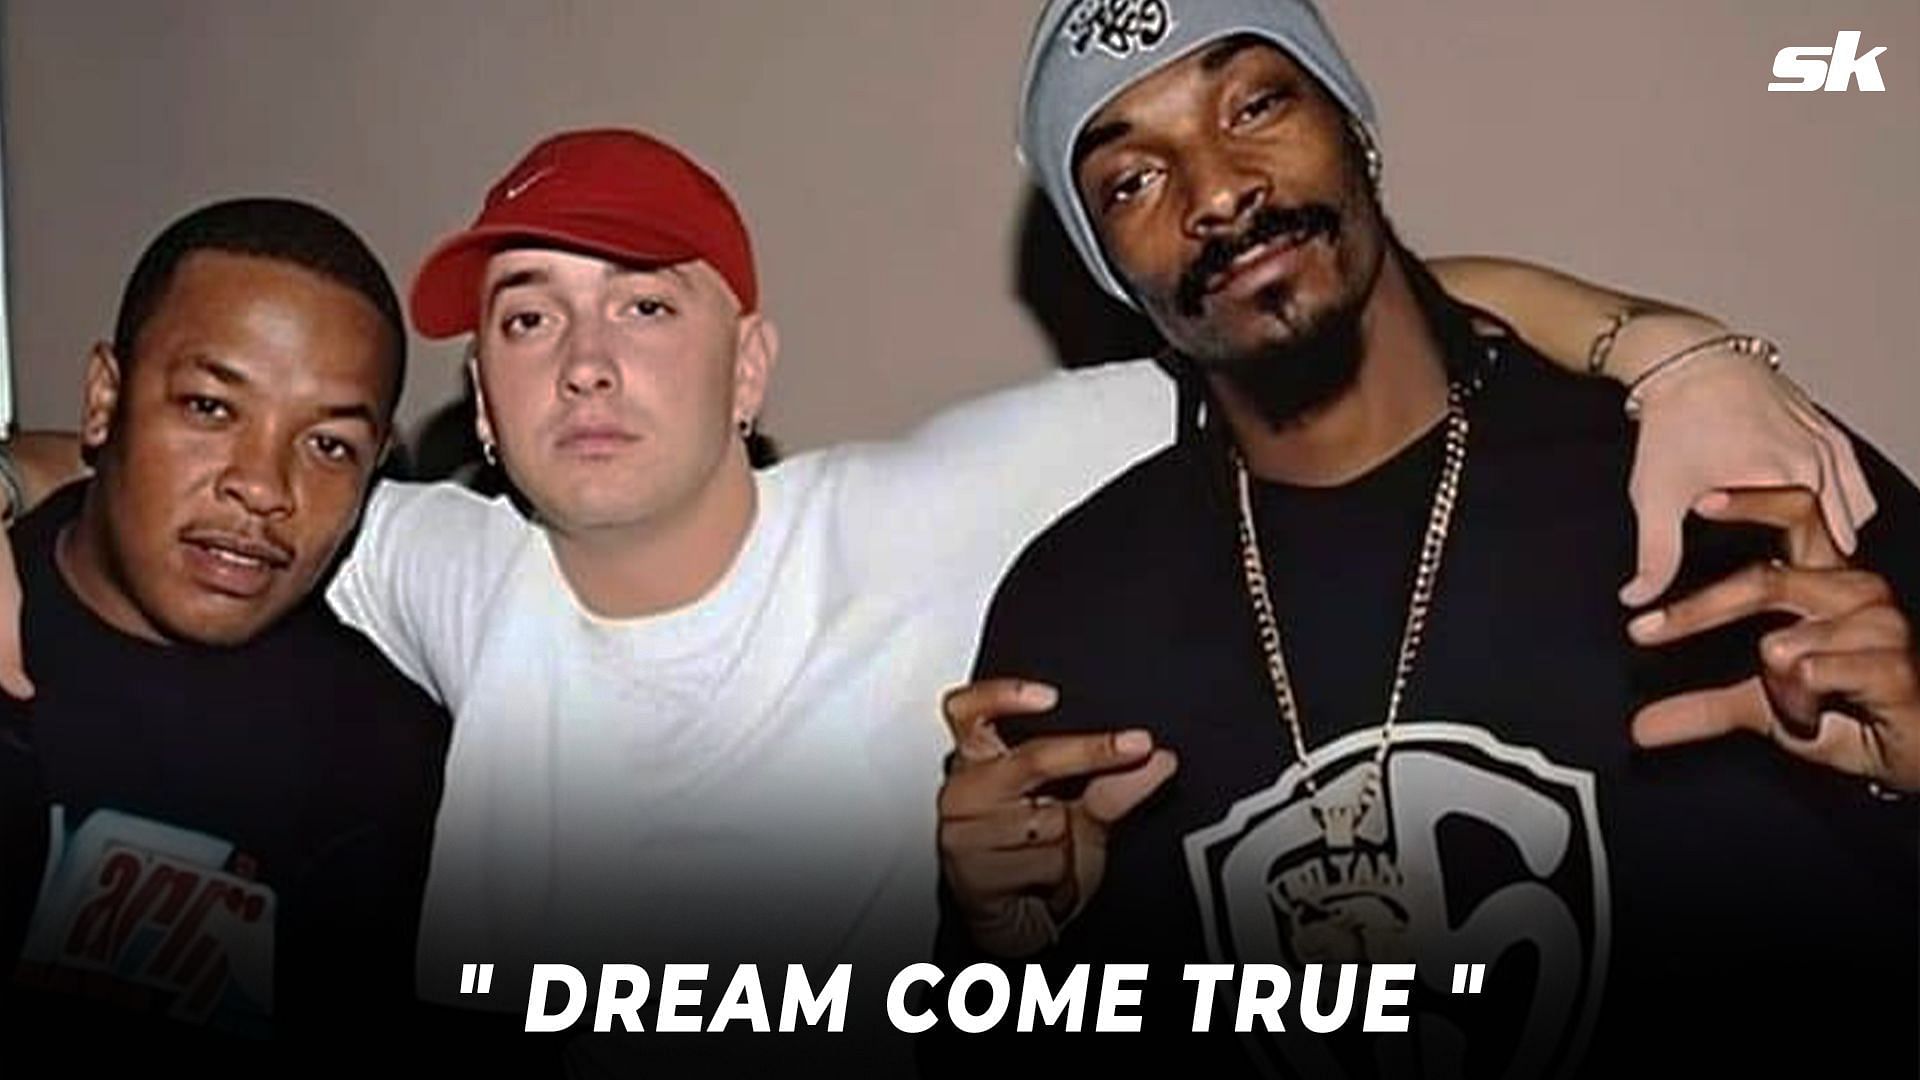 E Dr. Dre, Eminem, and Snoop Dog